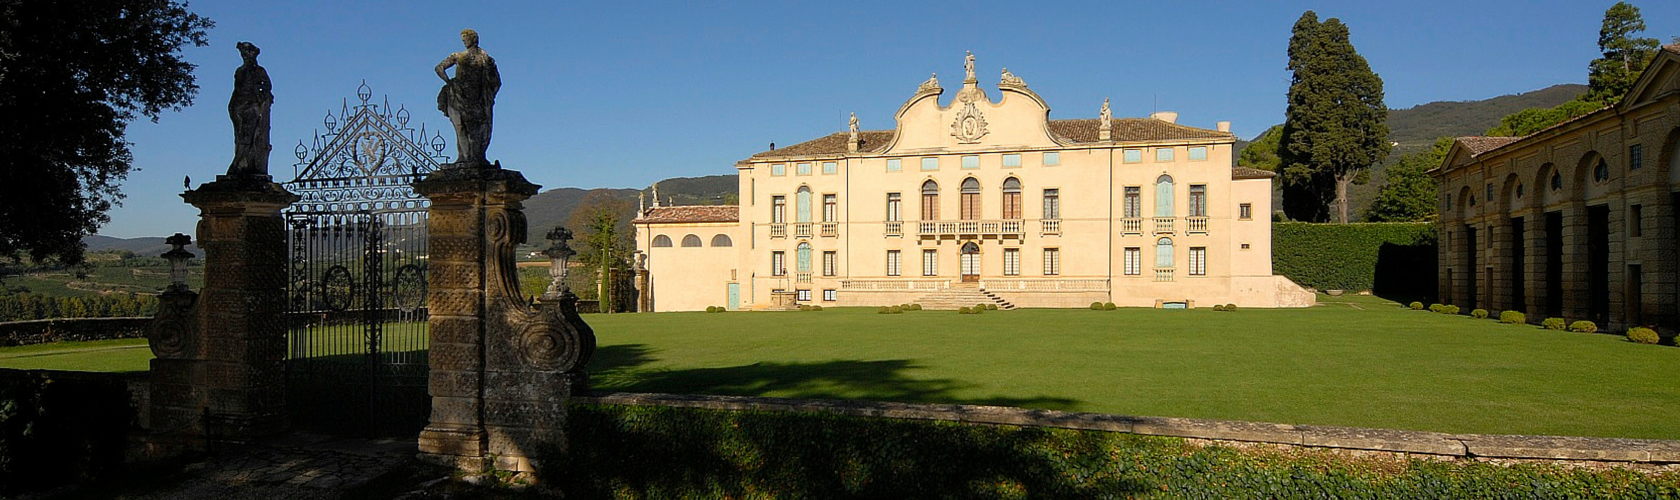 Vista della facciata, del giardino di Villa di Montruglio con scalinata e portico sulla destra